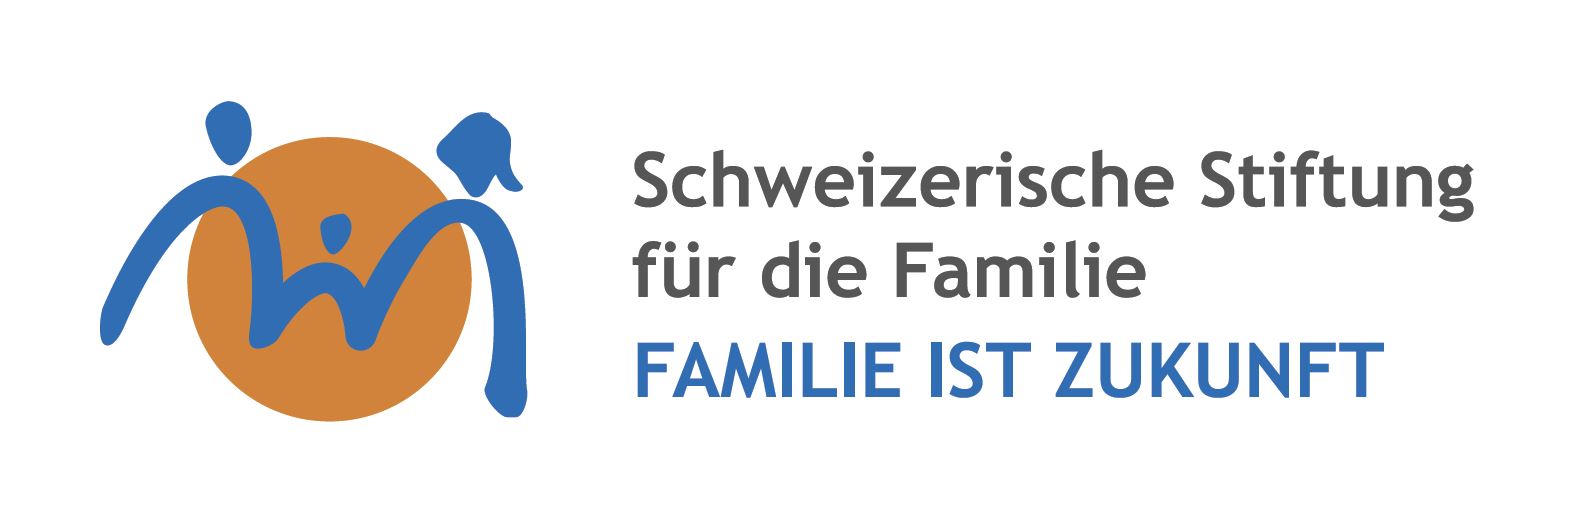 Schweizerische Stiftung für die Familie